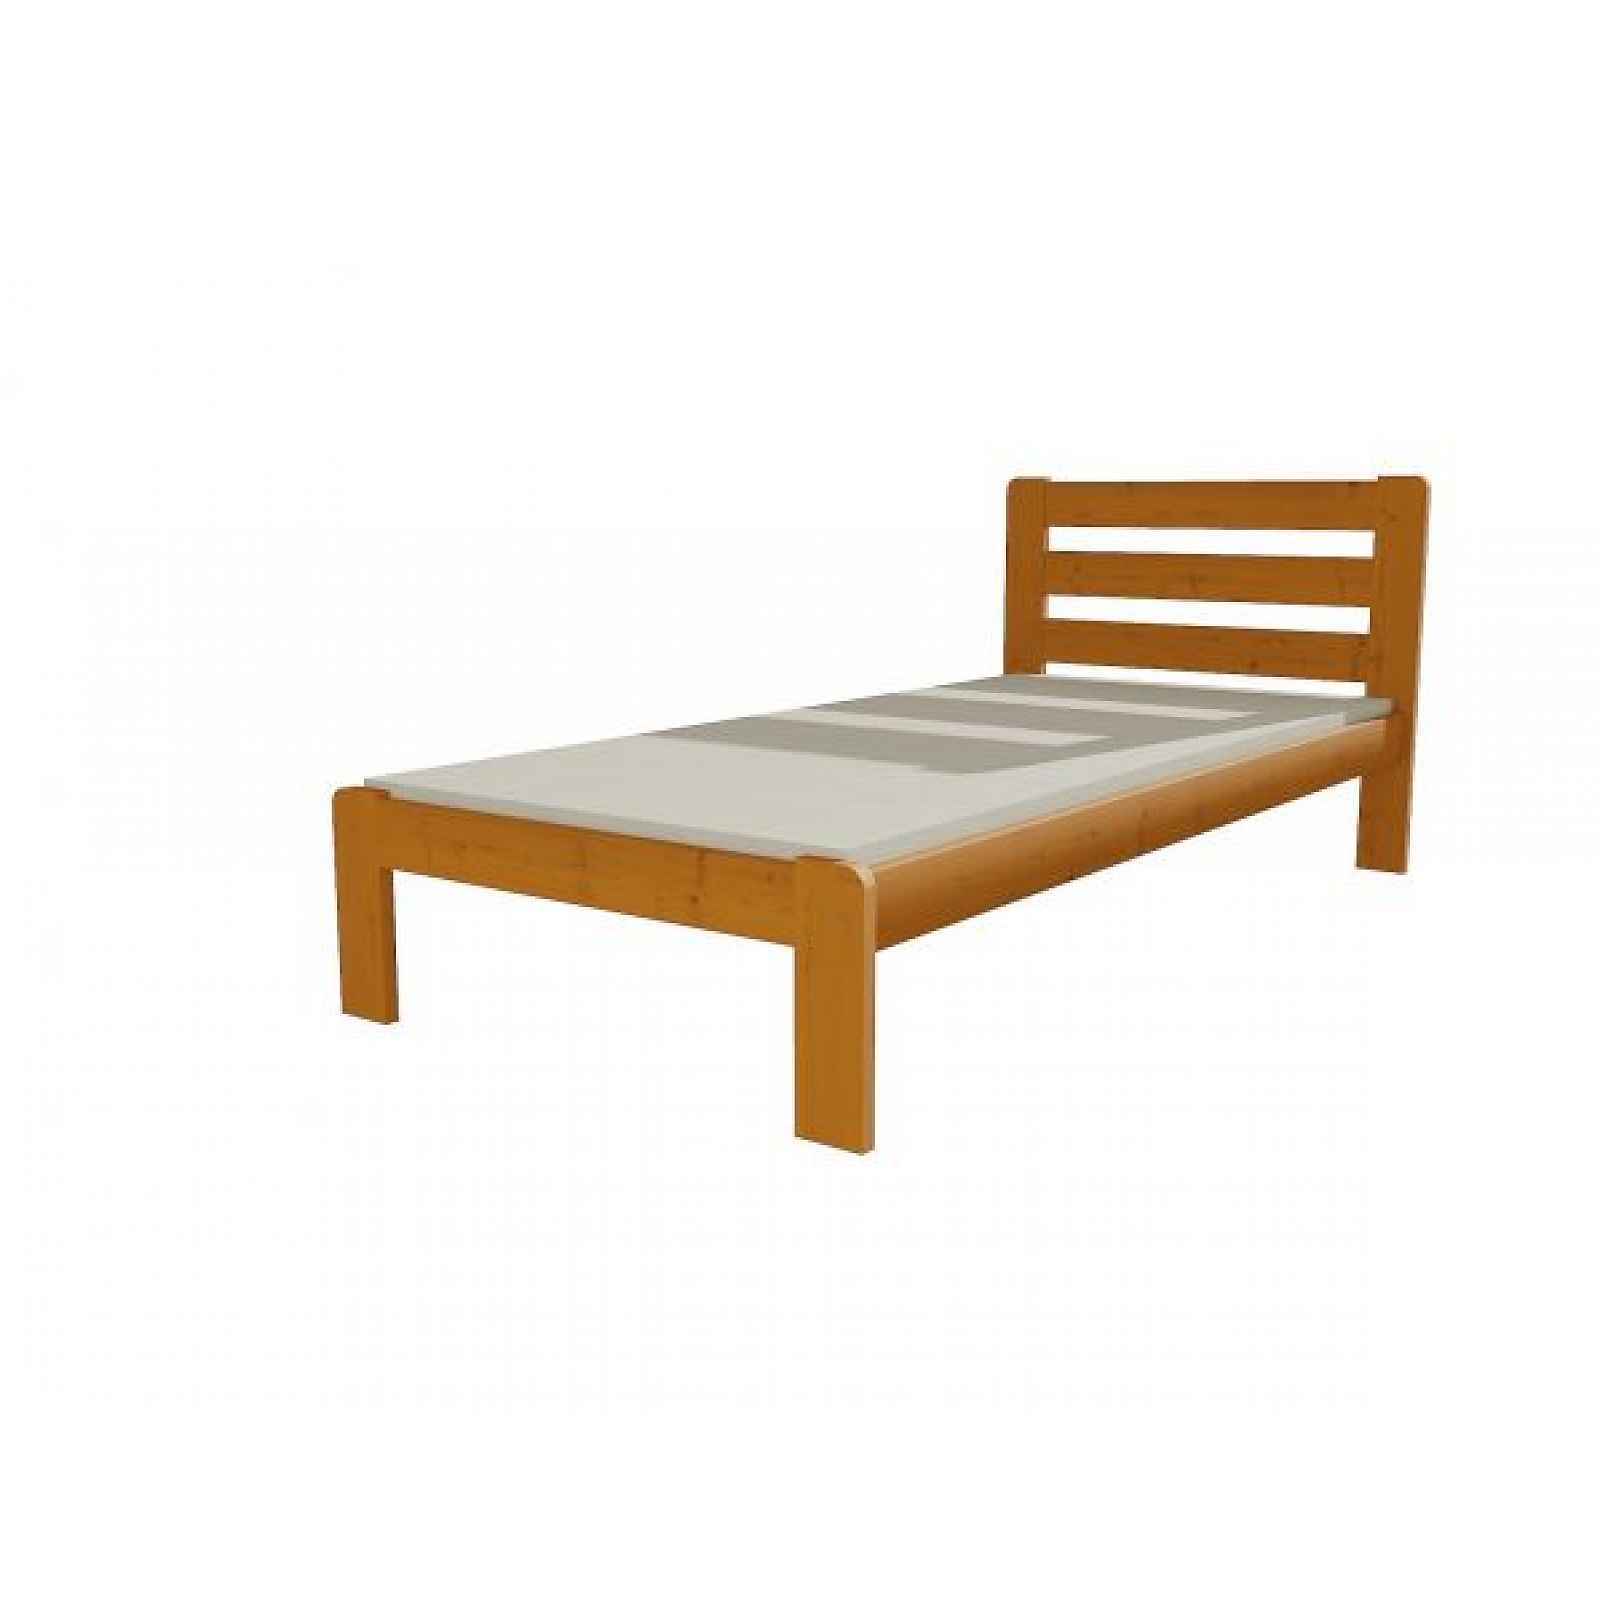 Jednolůžková postel VMK001A, dub